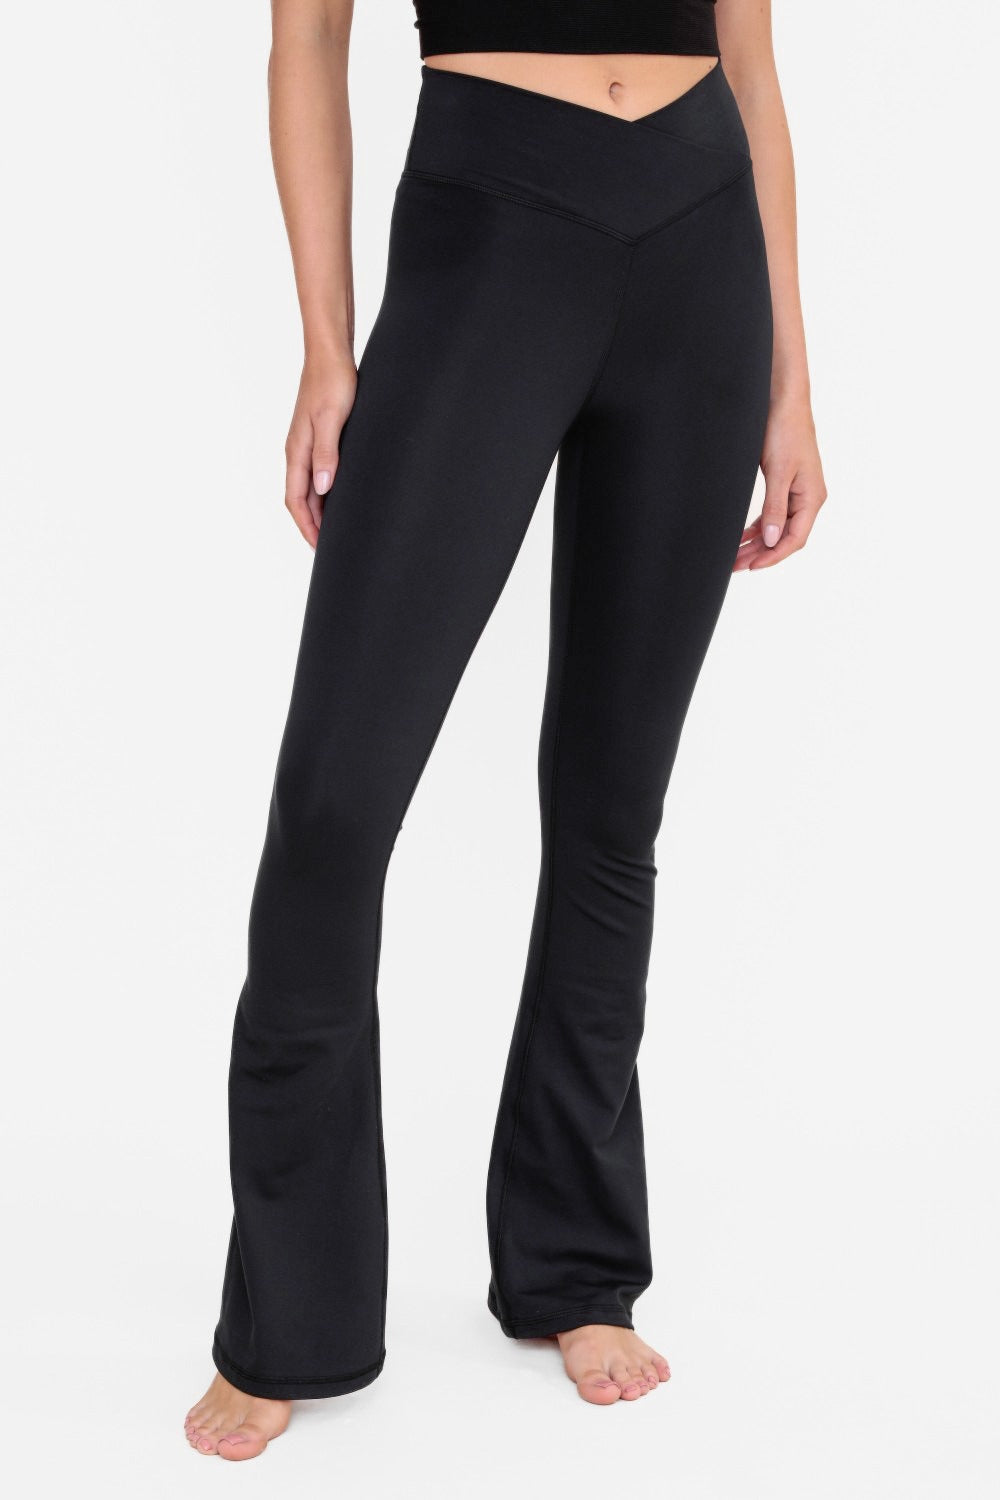 Modal Wide Leg Pants - Black, Women's Trousers & Yoga Pants